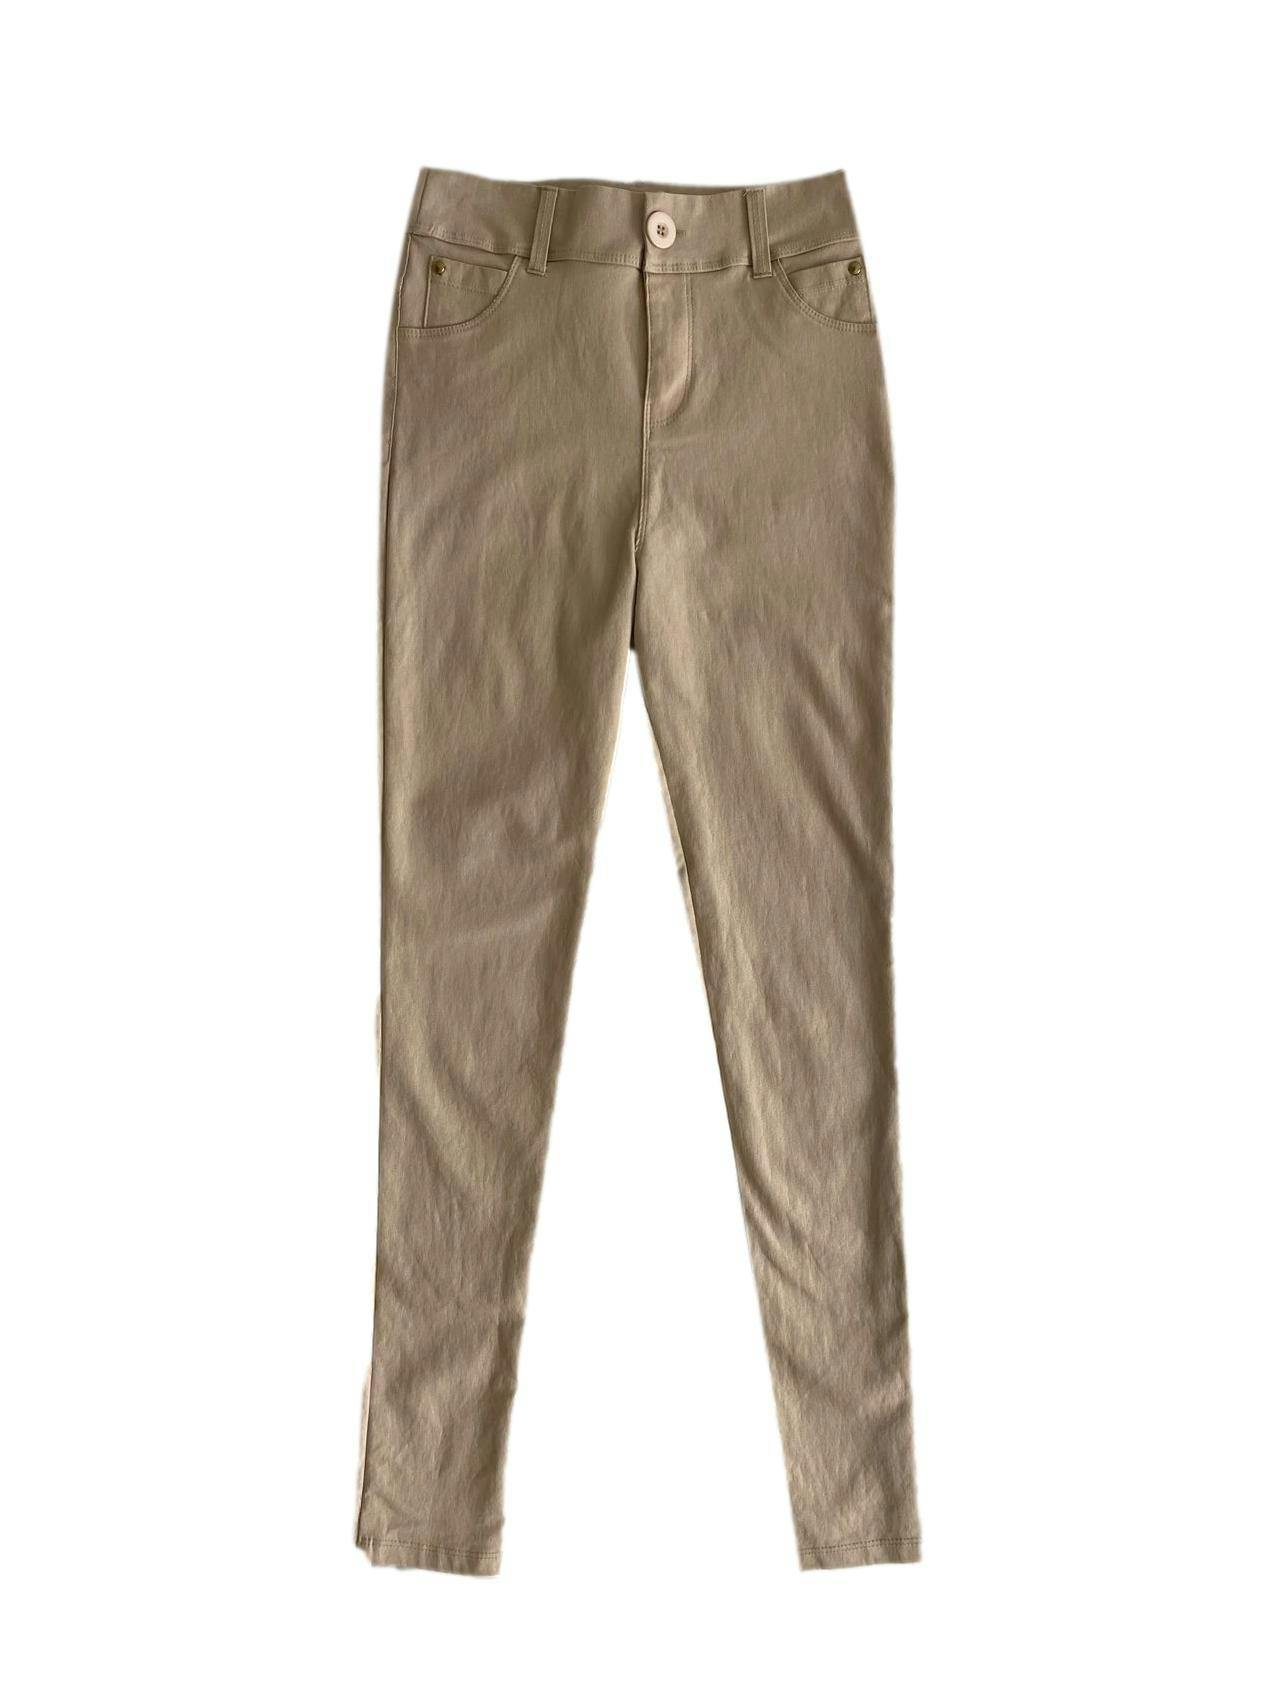 Pantalón Perica Encapsulada beige, tipo cuerina con bolsillos delanteros y traseros Cintura: 60 cm (sin estirar) Tiro: 27 cm Largo: 92 cm